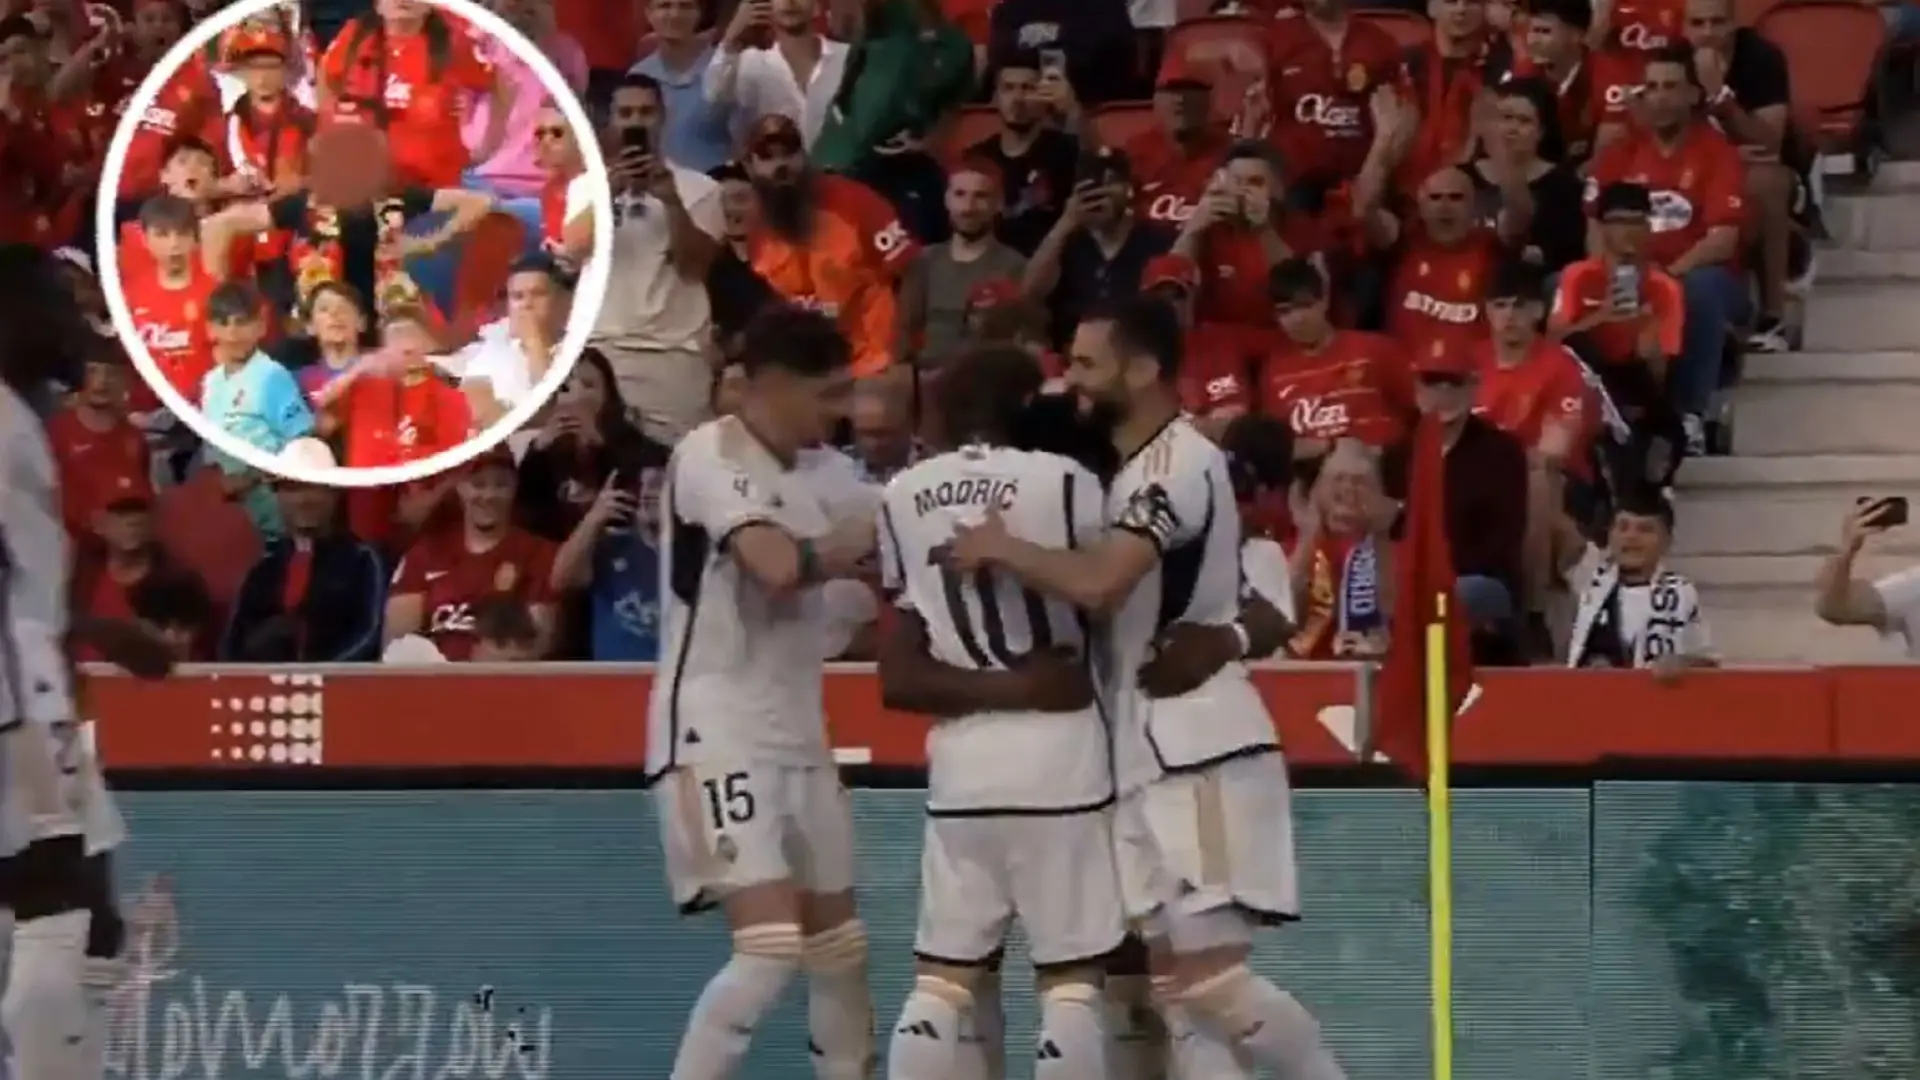 Episodio racista en el Real Madrid – Mallorca: un joven hace gestos de mono tras el gol de Tchouaméni